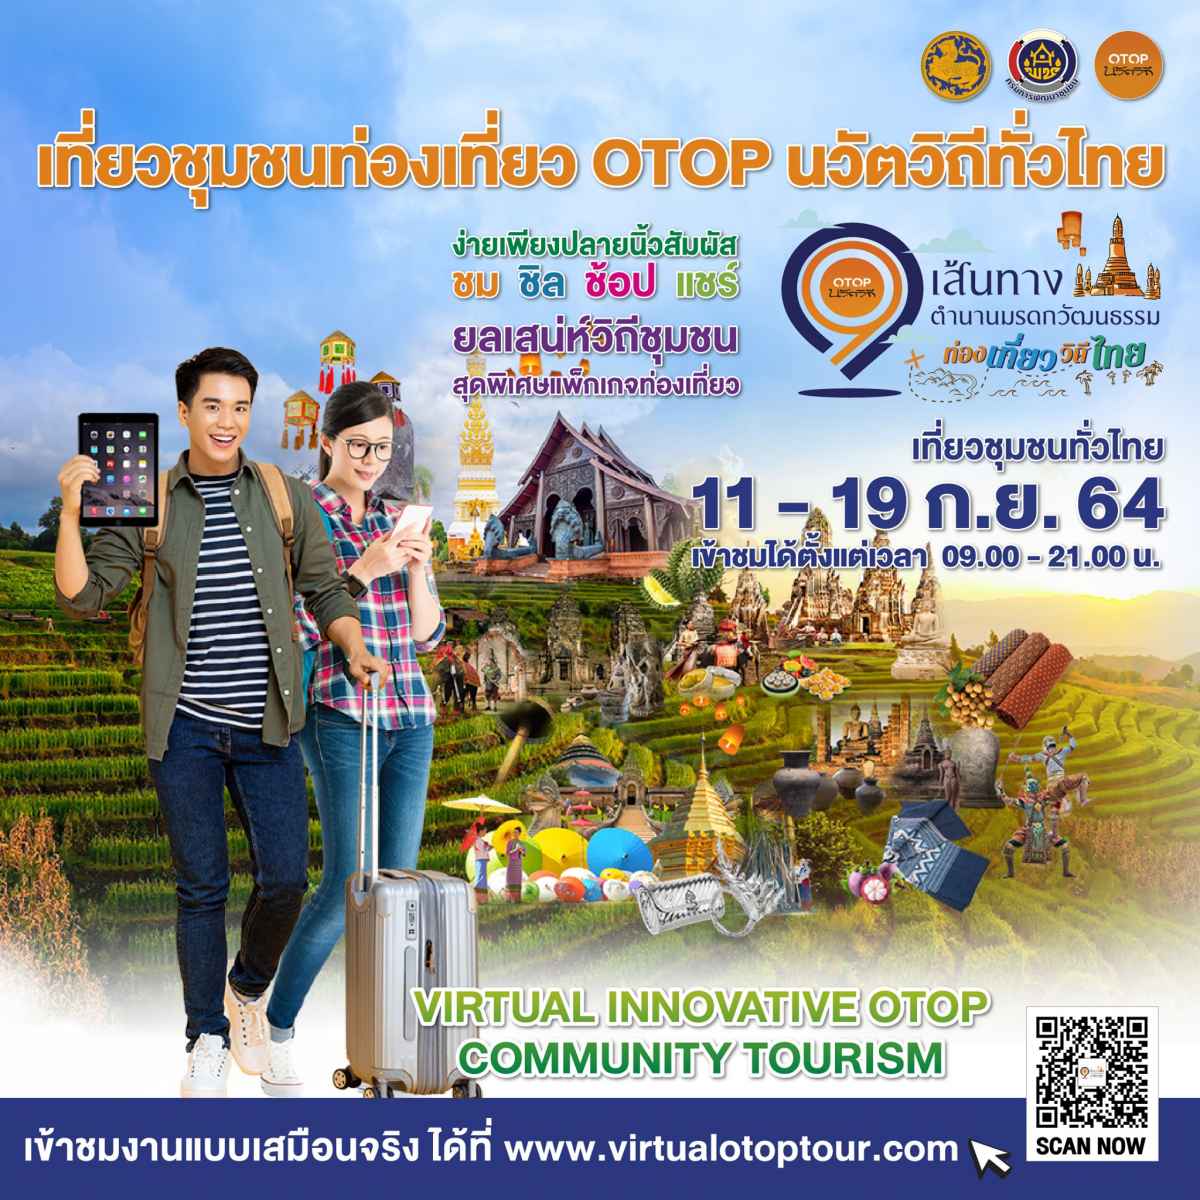 ชุมชน OTOP นวัตวิถีไทย